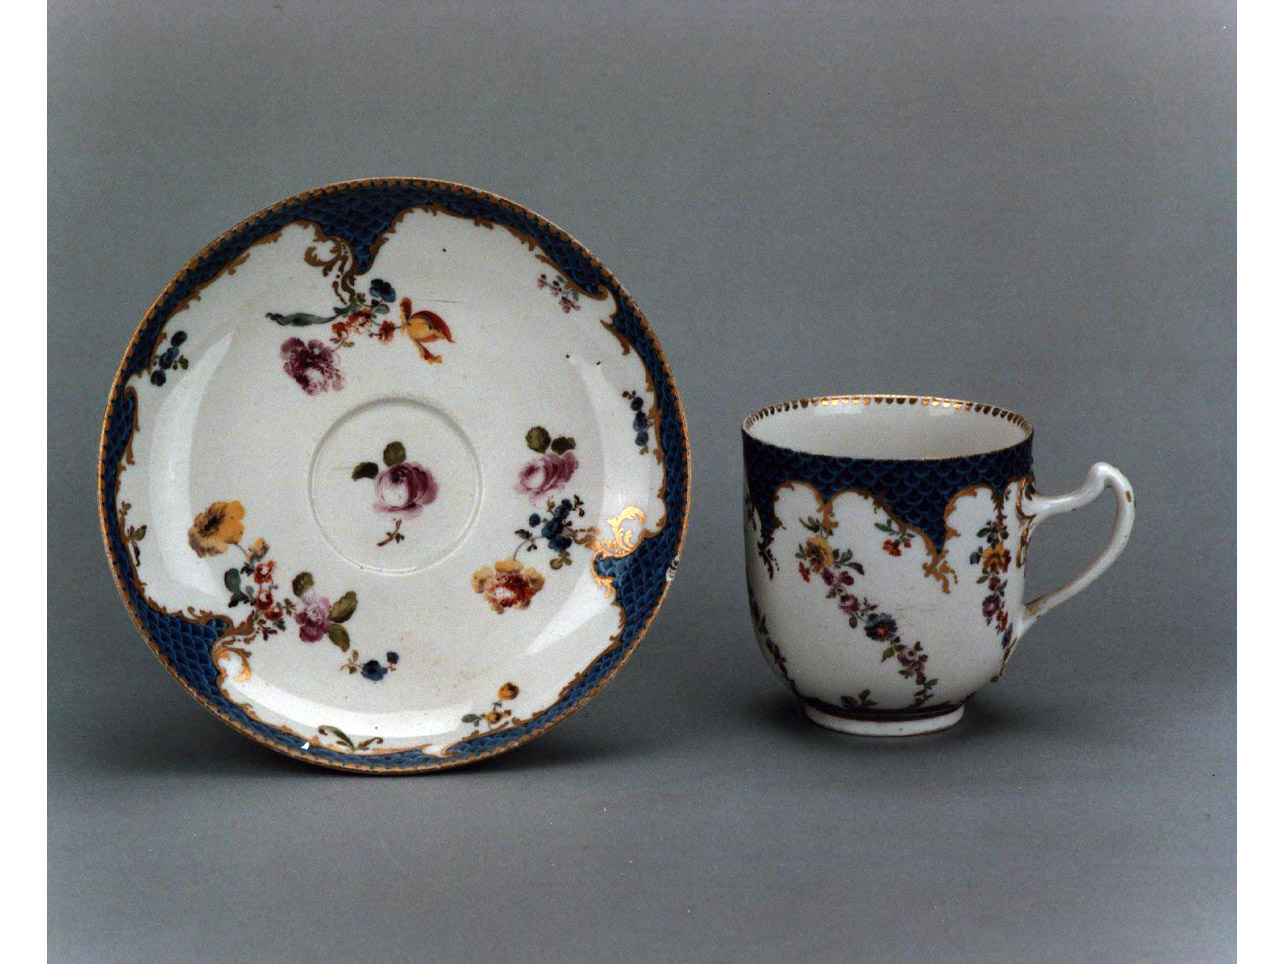 motivi decorativi floreali (piattino, elemento d'insieme) - manifattura di Meissen (sec. XVIII)